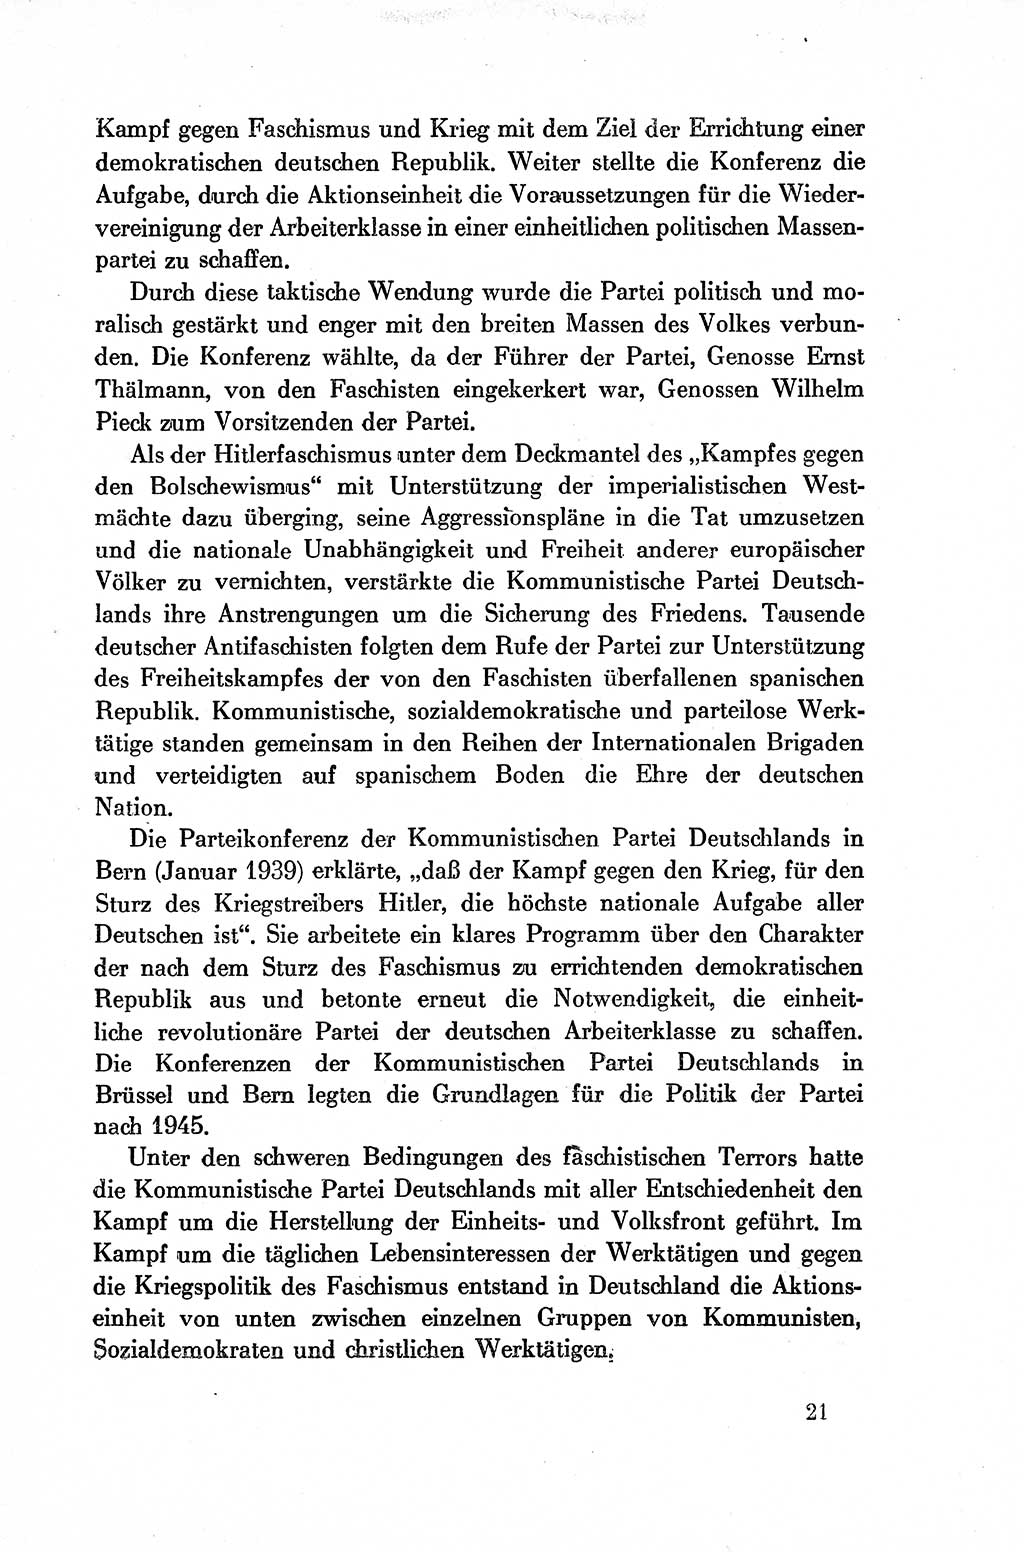 Dokumente der Sozialistischen Einheitspartei Deutschlands (SED) [Deutsche Demokratische Republik (DDR)] 1954-1955, Seite 21 (Dok. SED DDR 1954-1955, S. 21)